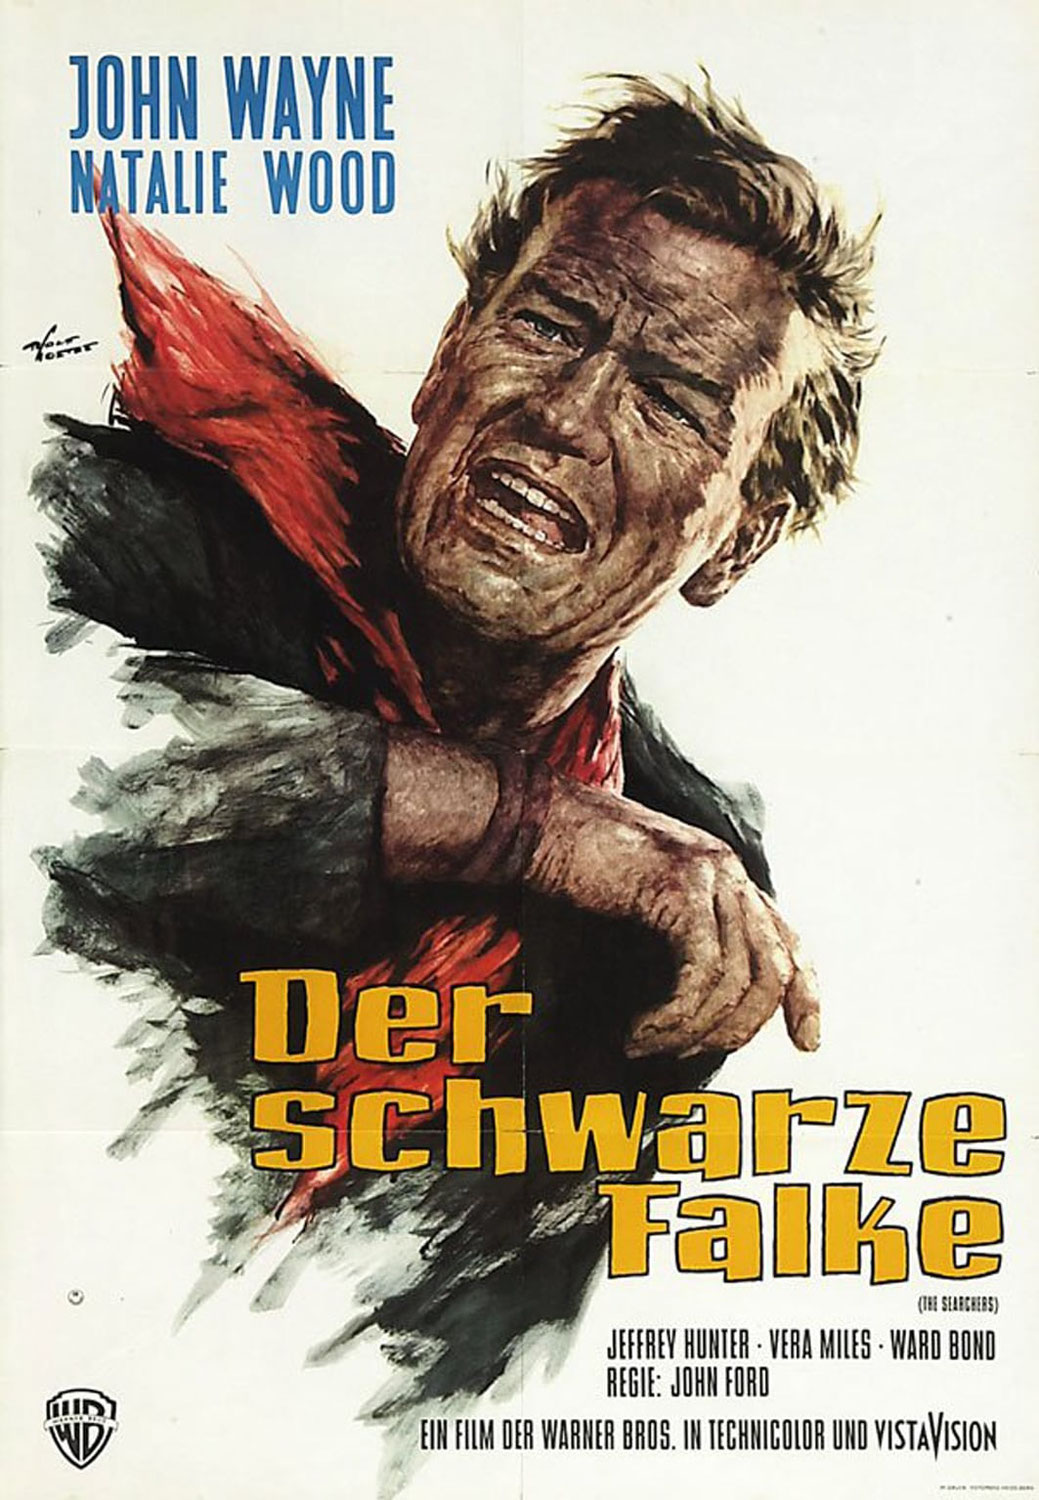 "Der Schwarze Falke 1956 ‧ Western/Drama ‧ 1 h 59 min.- 3840x2160px,200% Upscale."